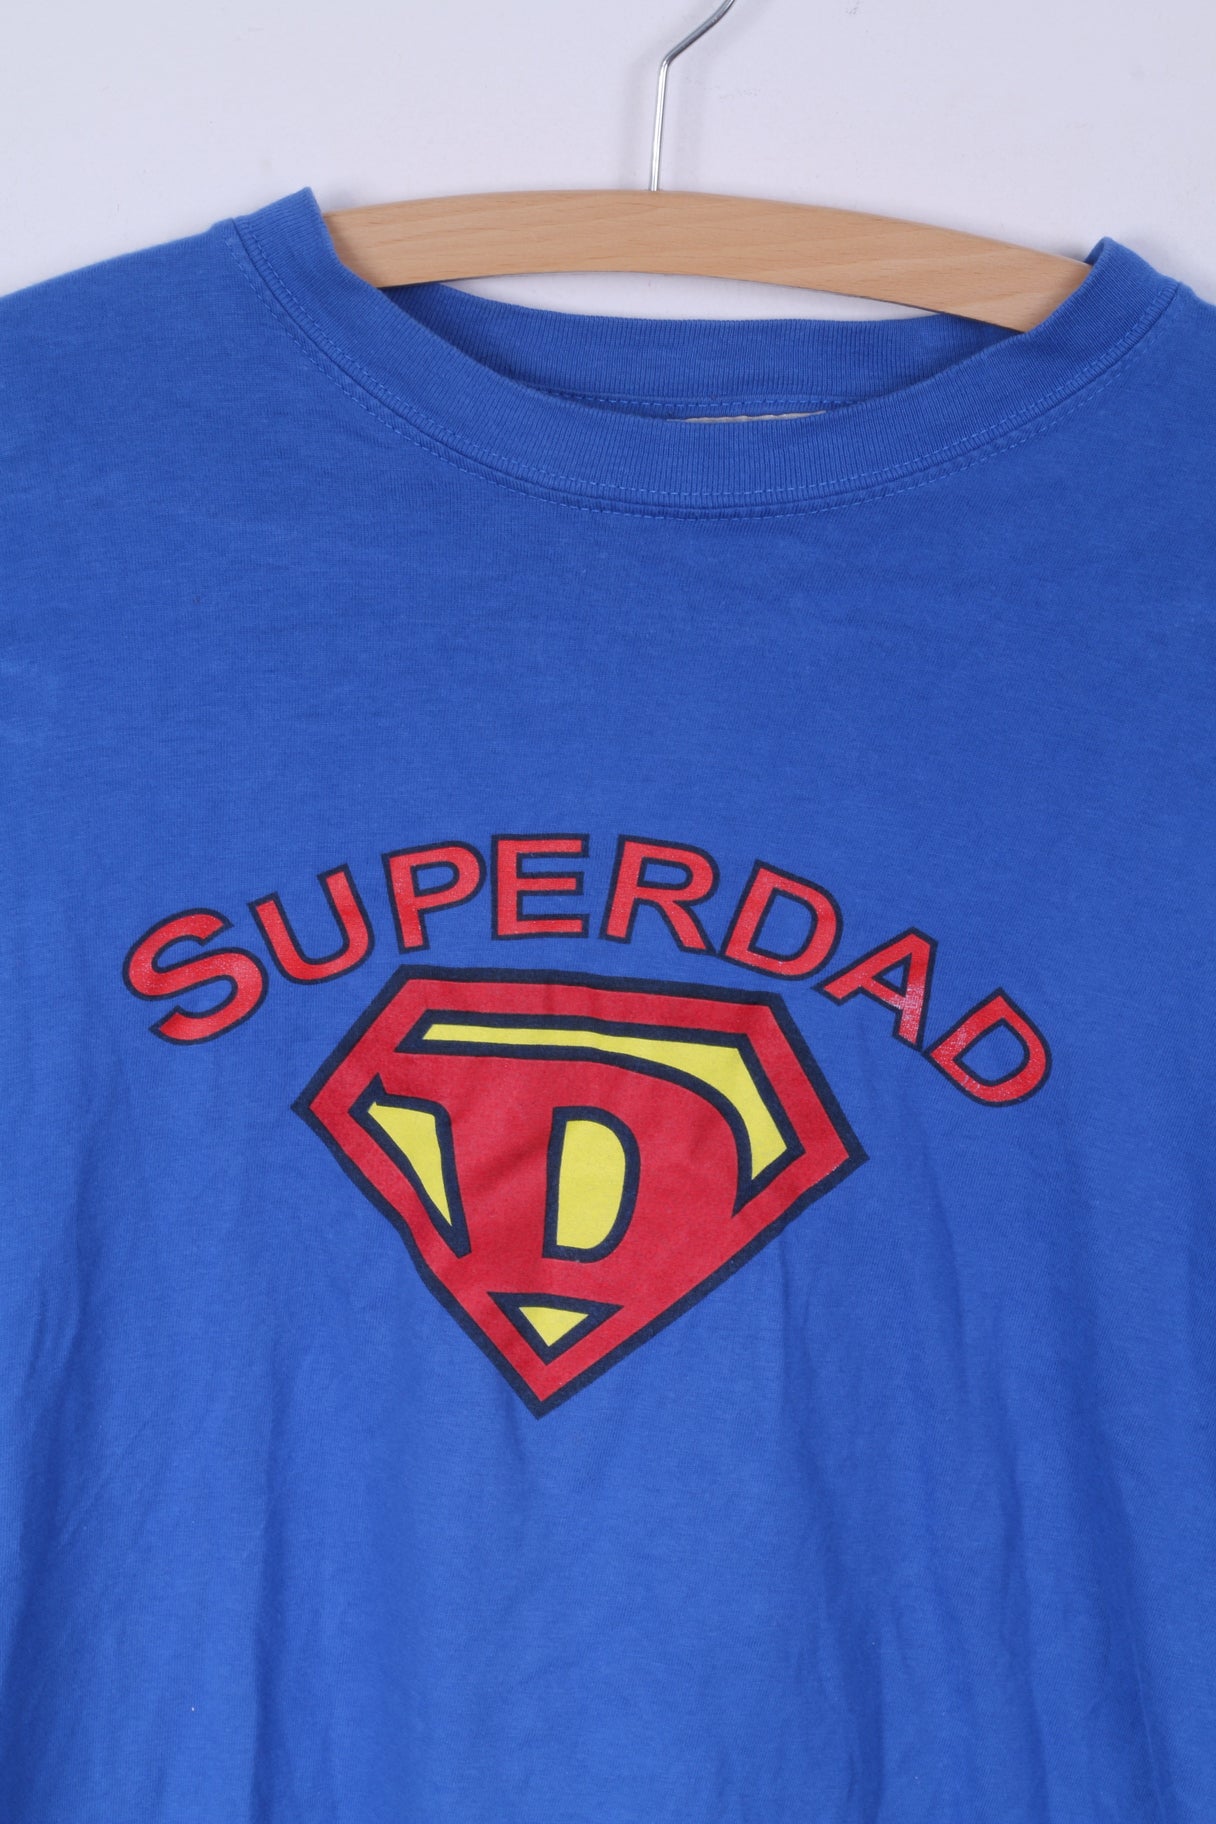 Bhs Ltd Mens L T-Shirt Blue Cotton Graphic Superdad Superhero